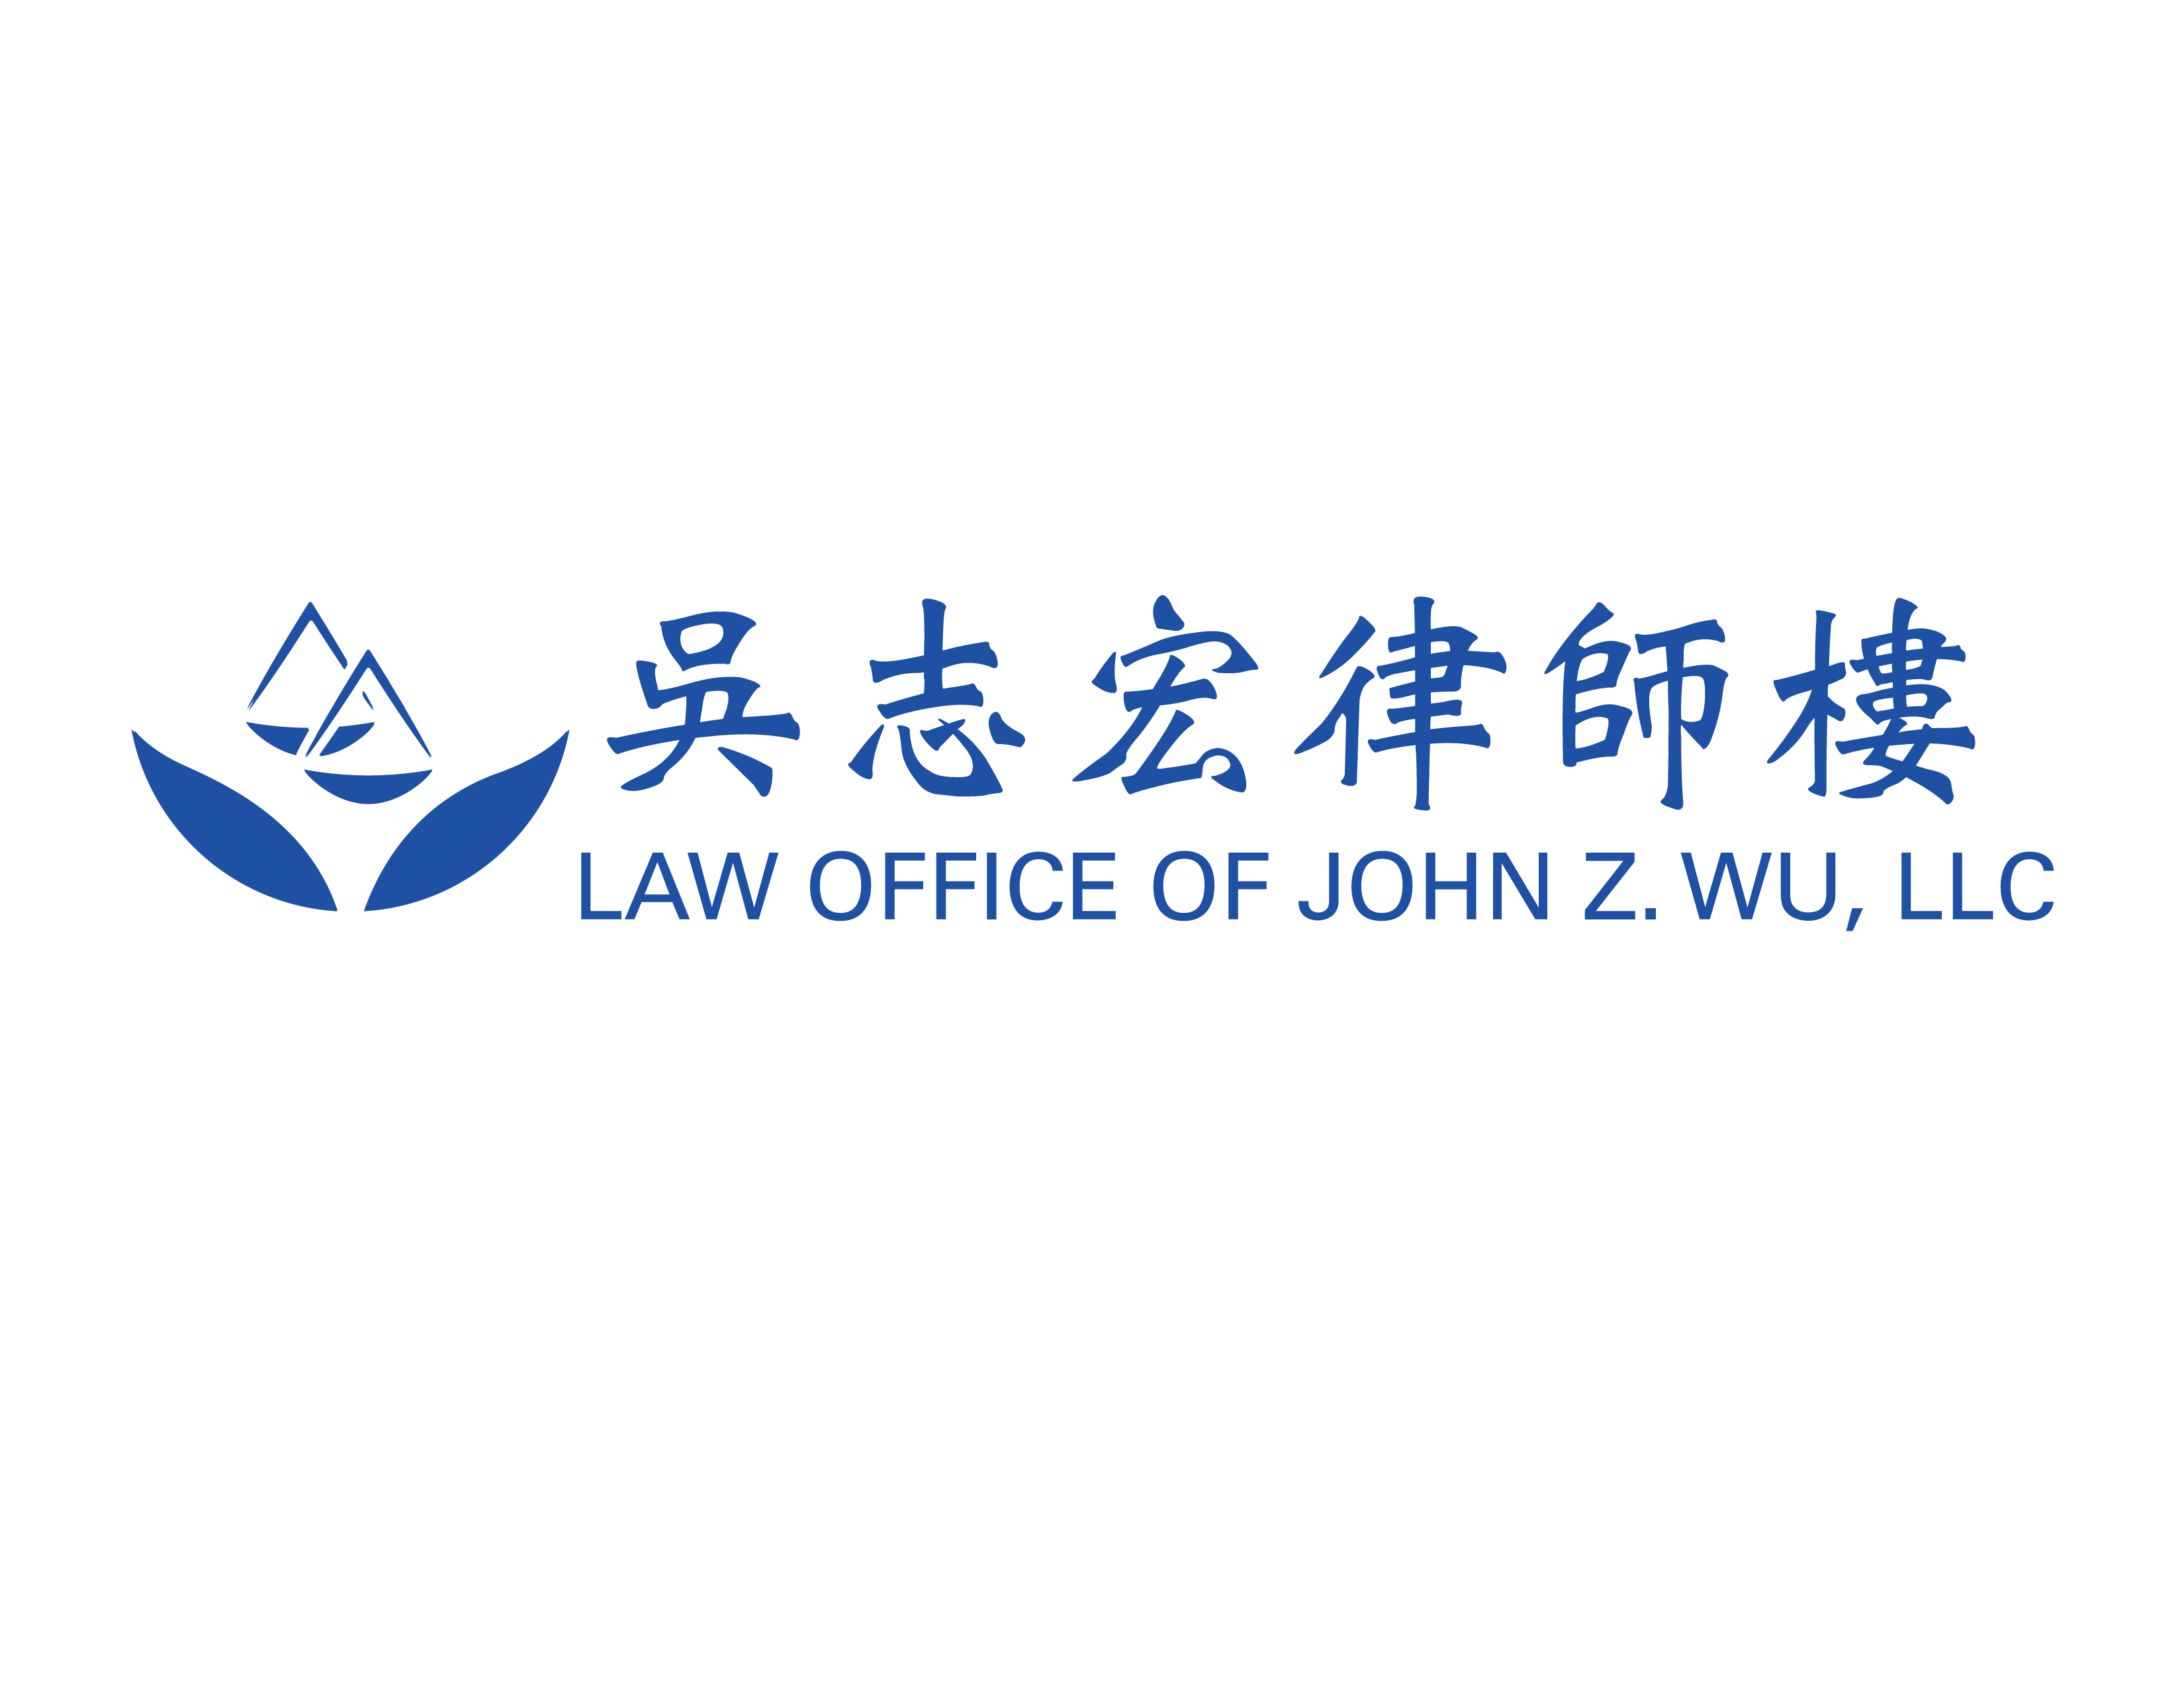 John Wu Law